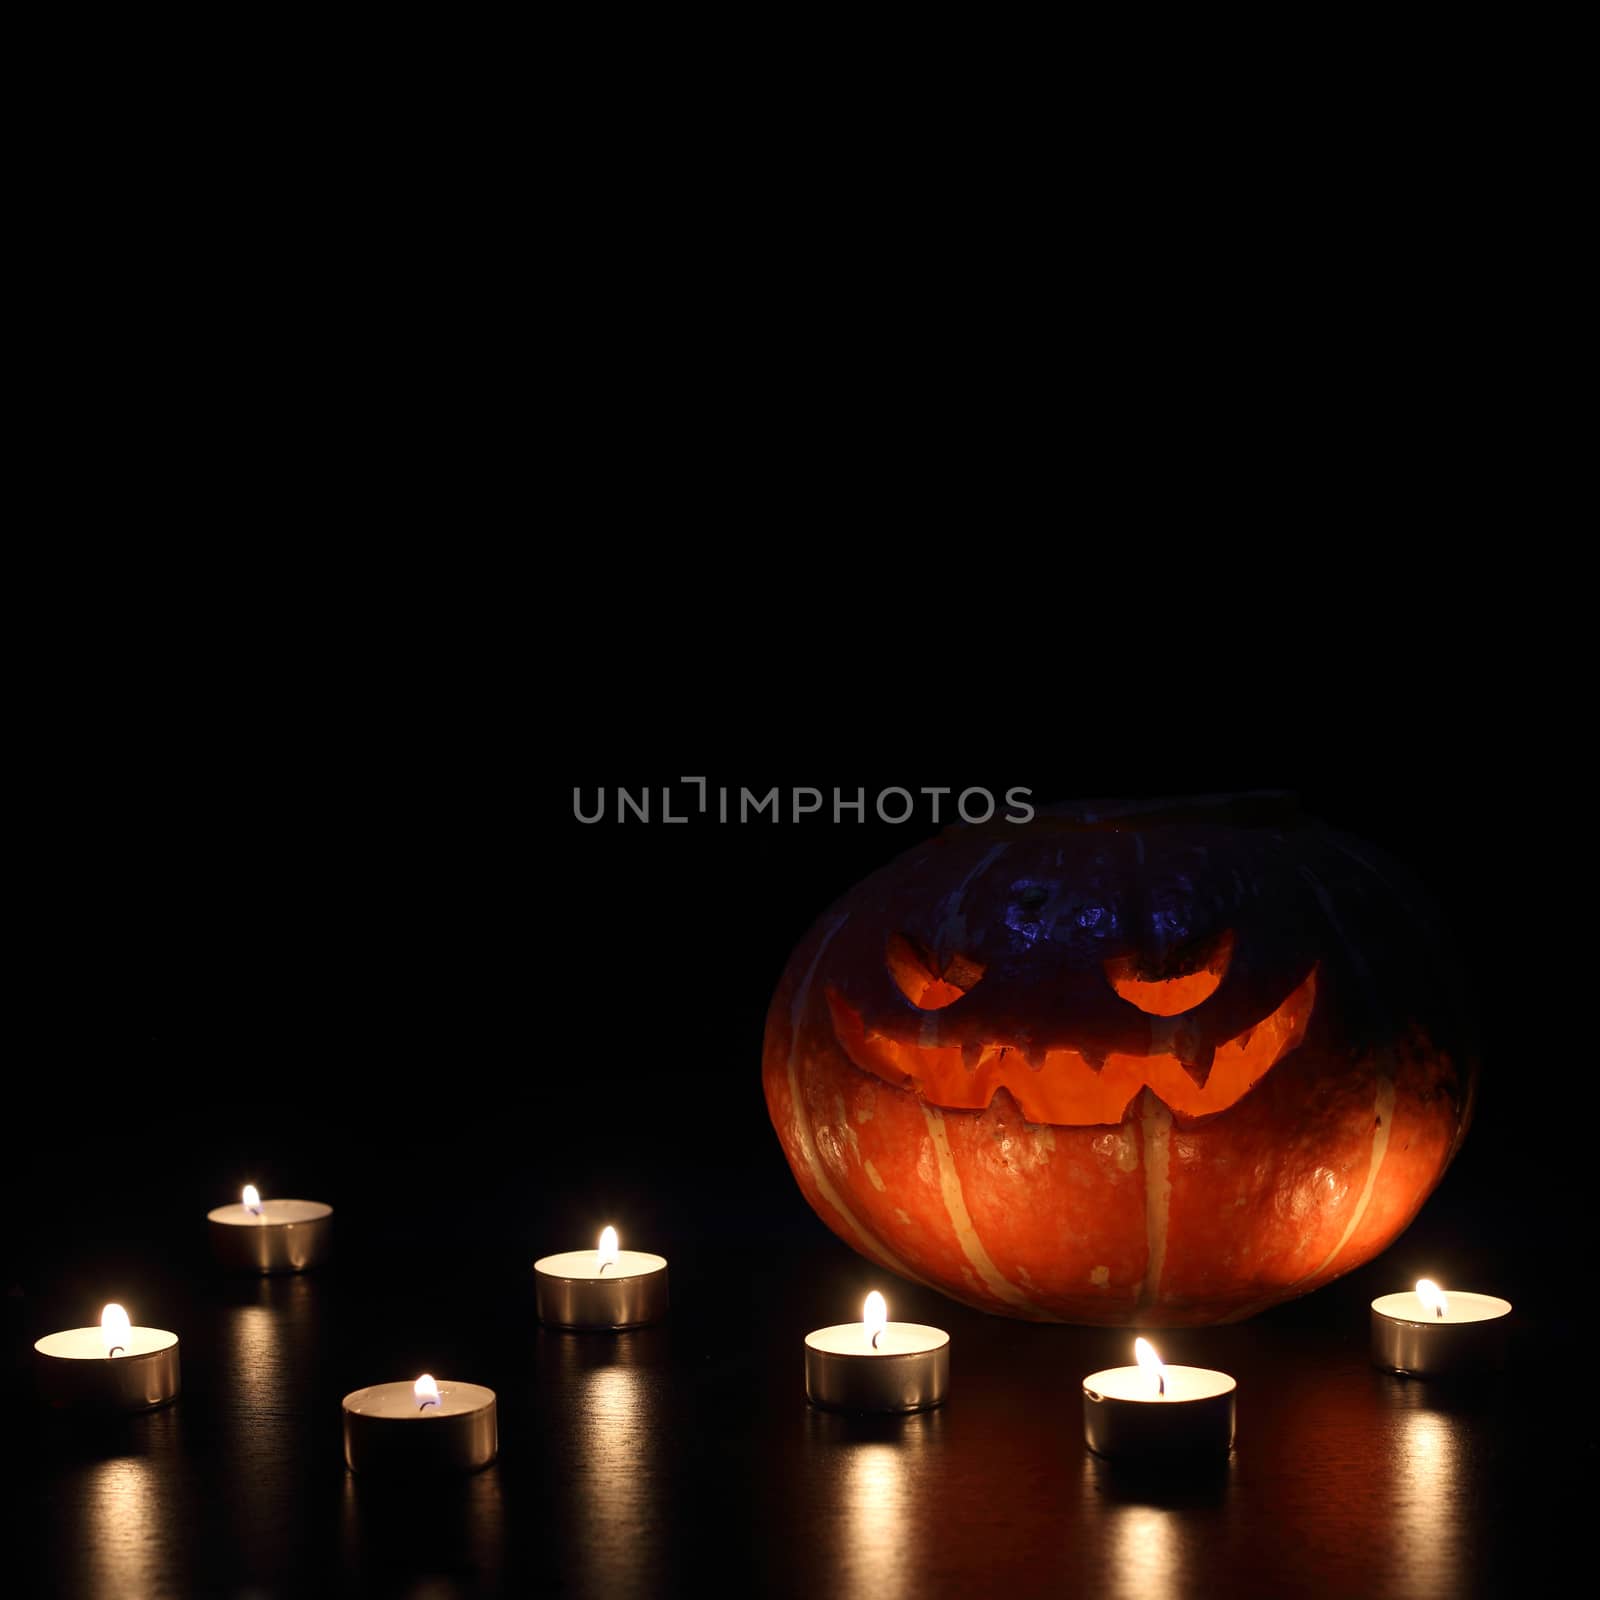 Illuminated cute halloween pumpkin isolated on black background